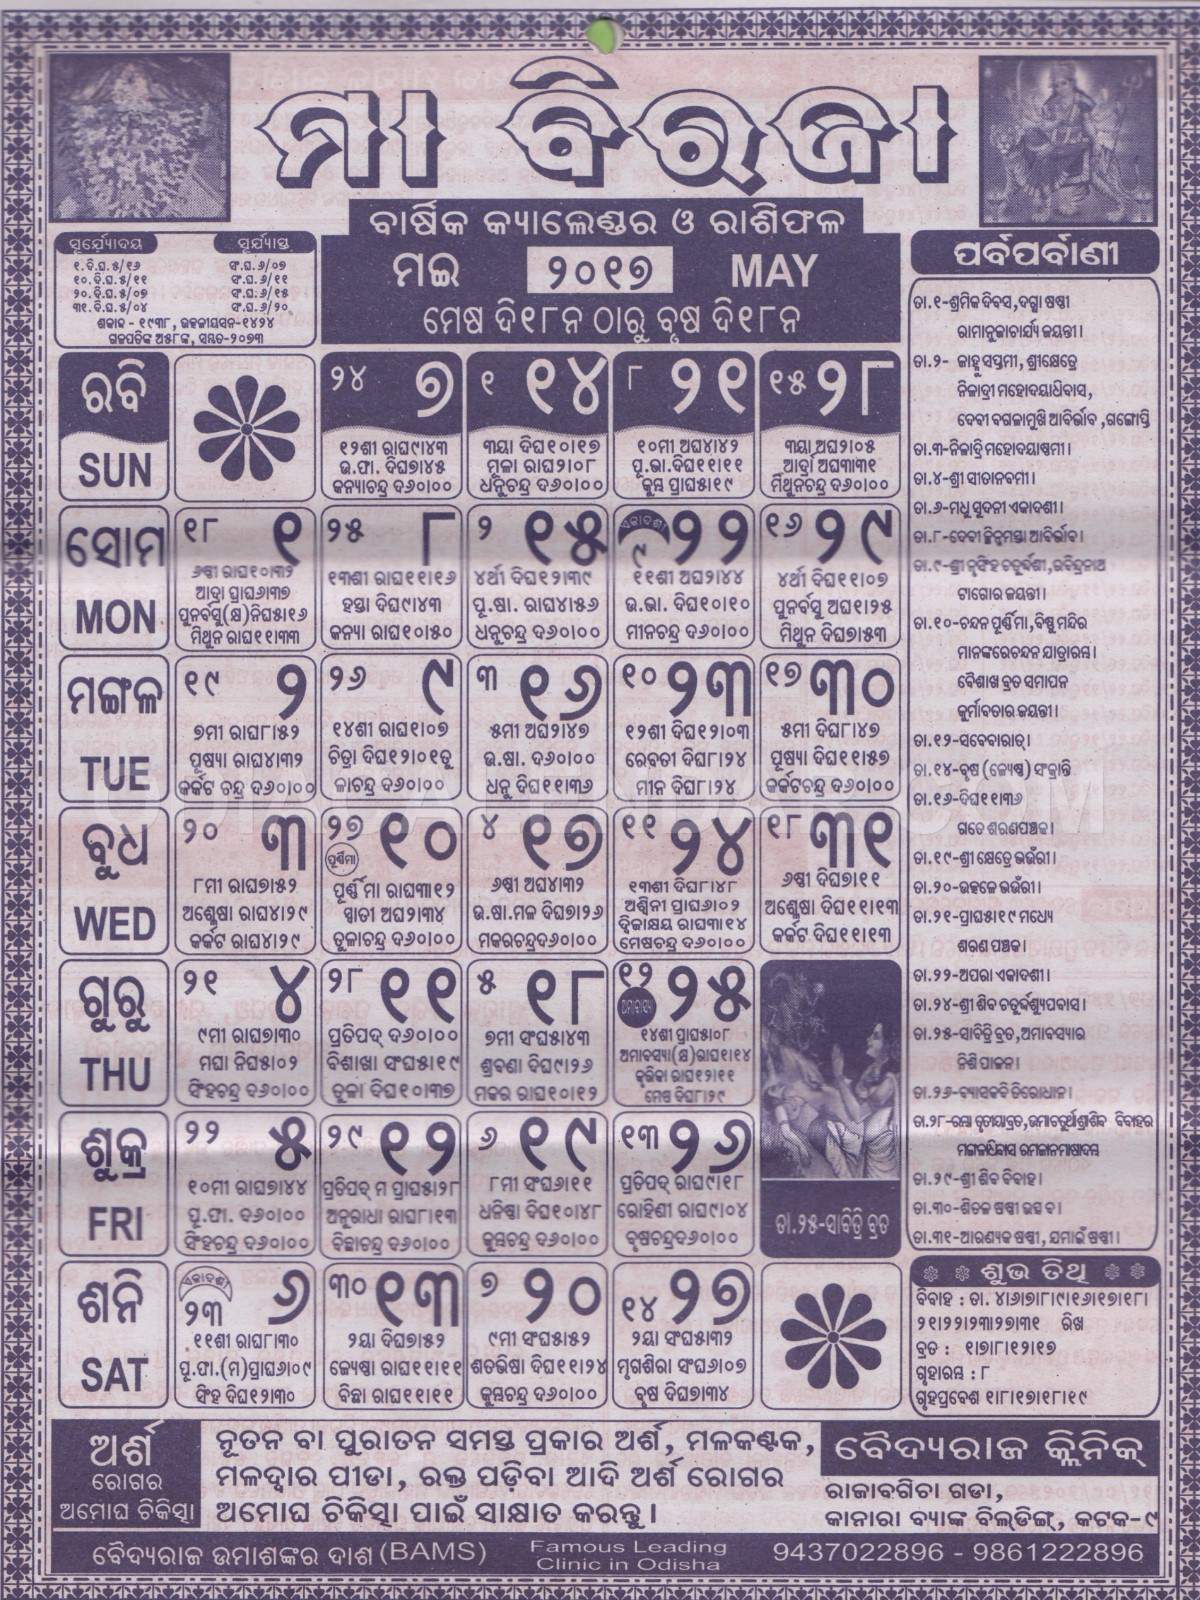 Biraja Calendar may 2017